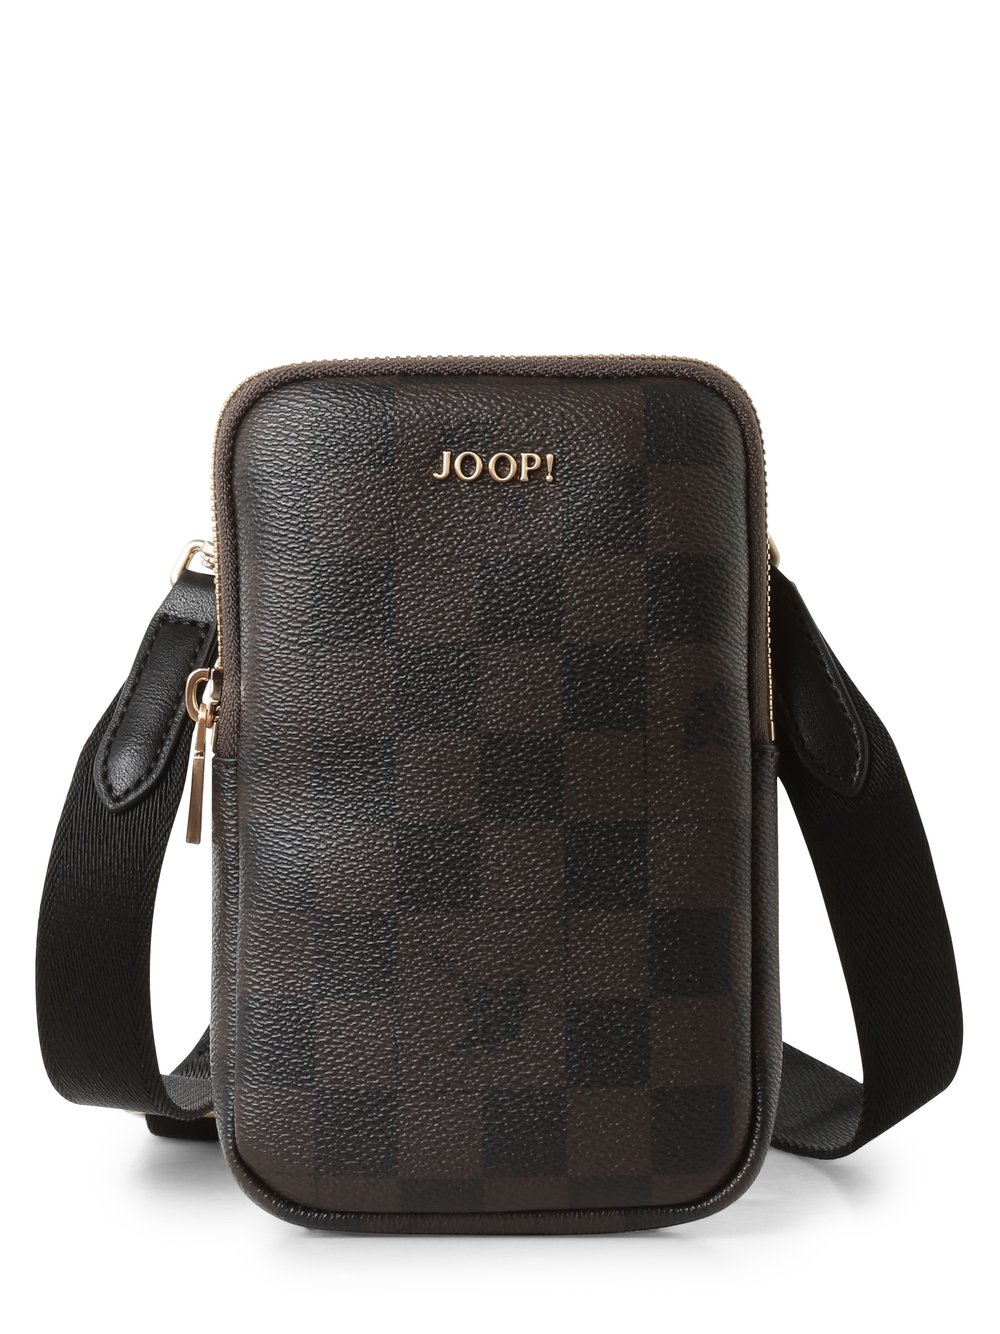 Joop - Damska torba na ramię – Bianca, brązowy|czarny